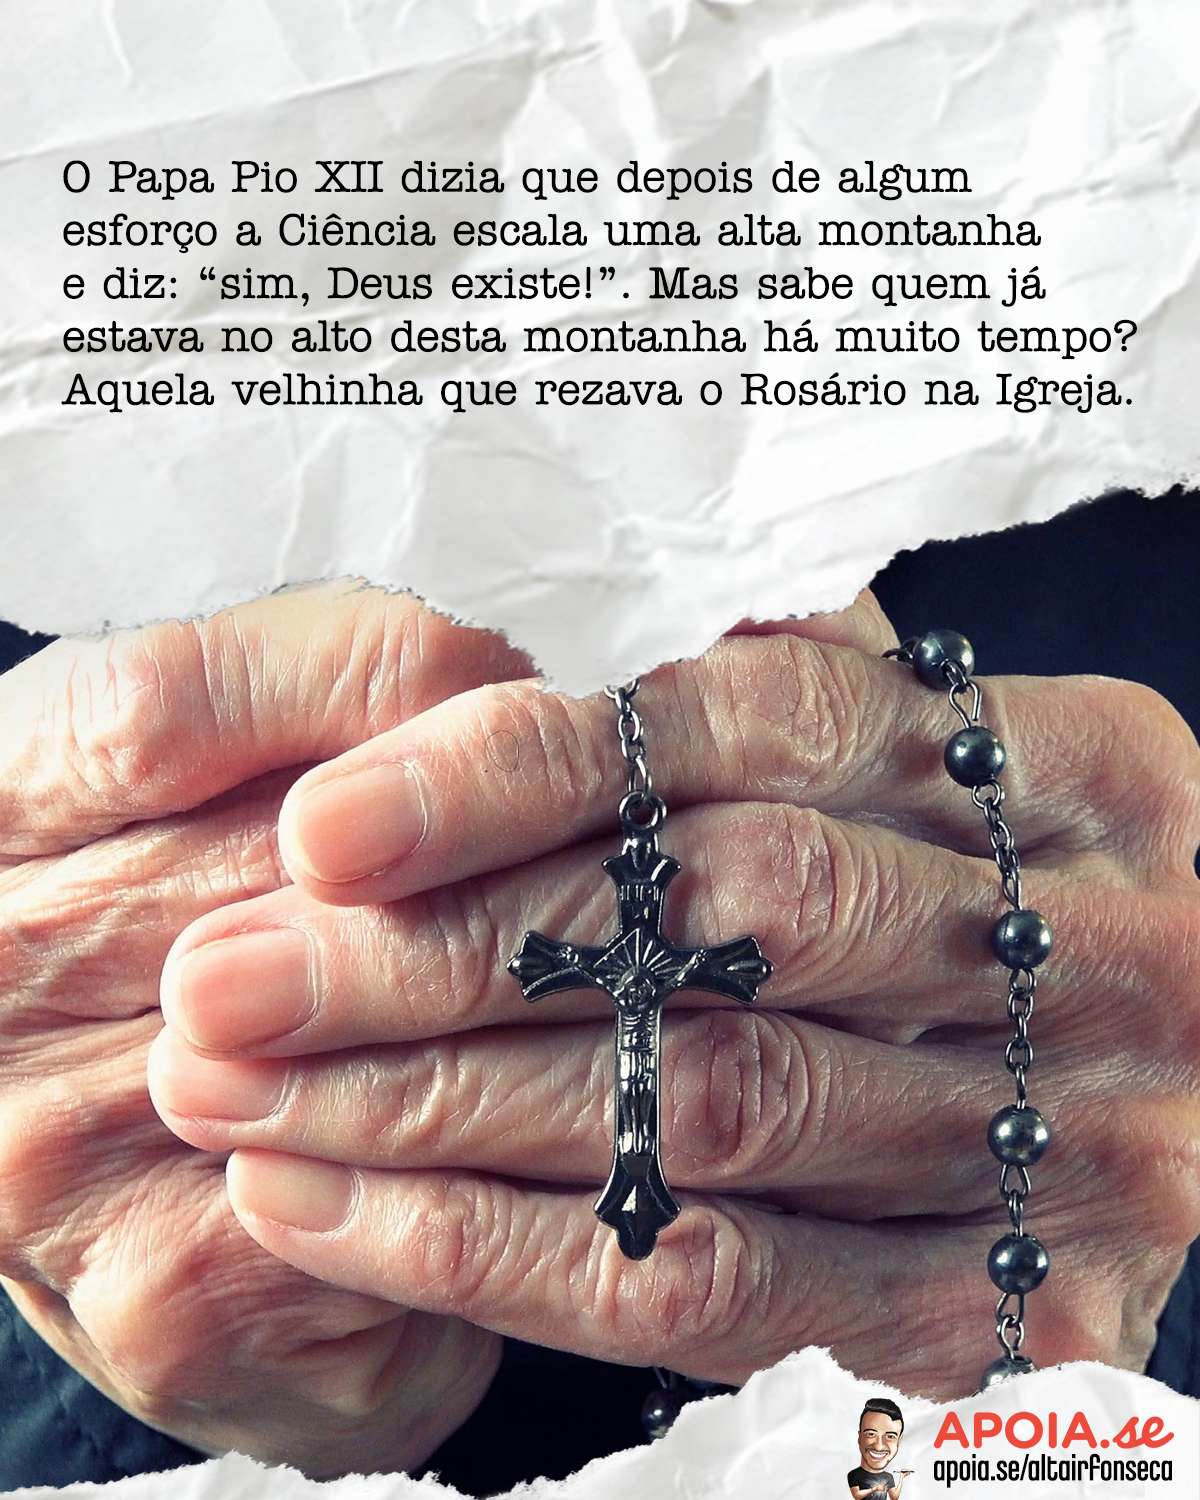 A velhinha que rezava o Rosário na Igreja